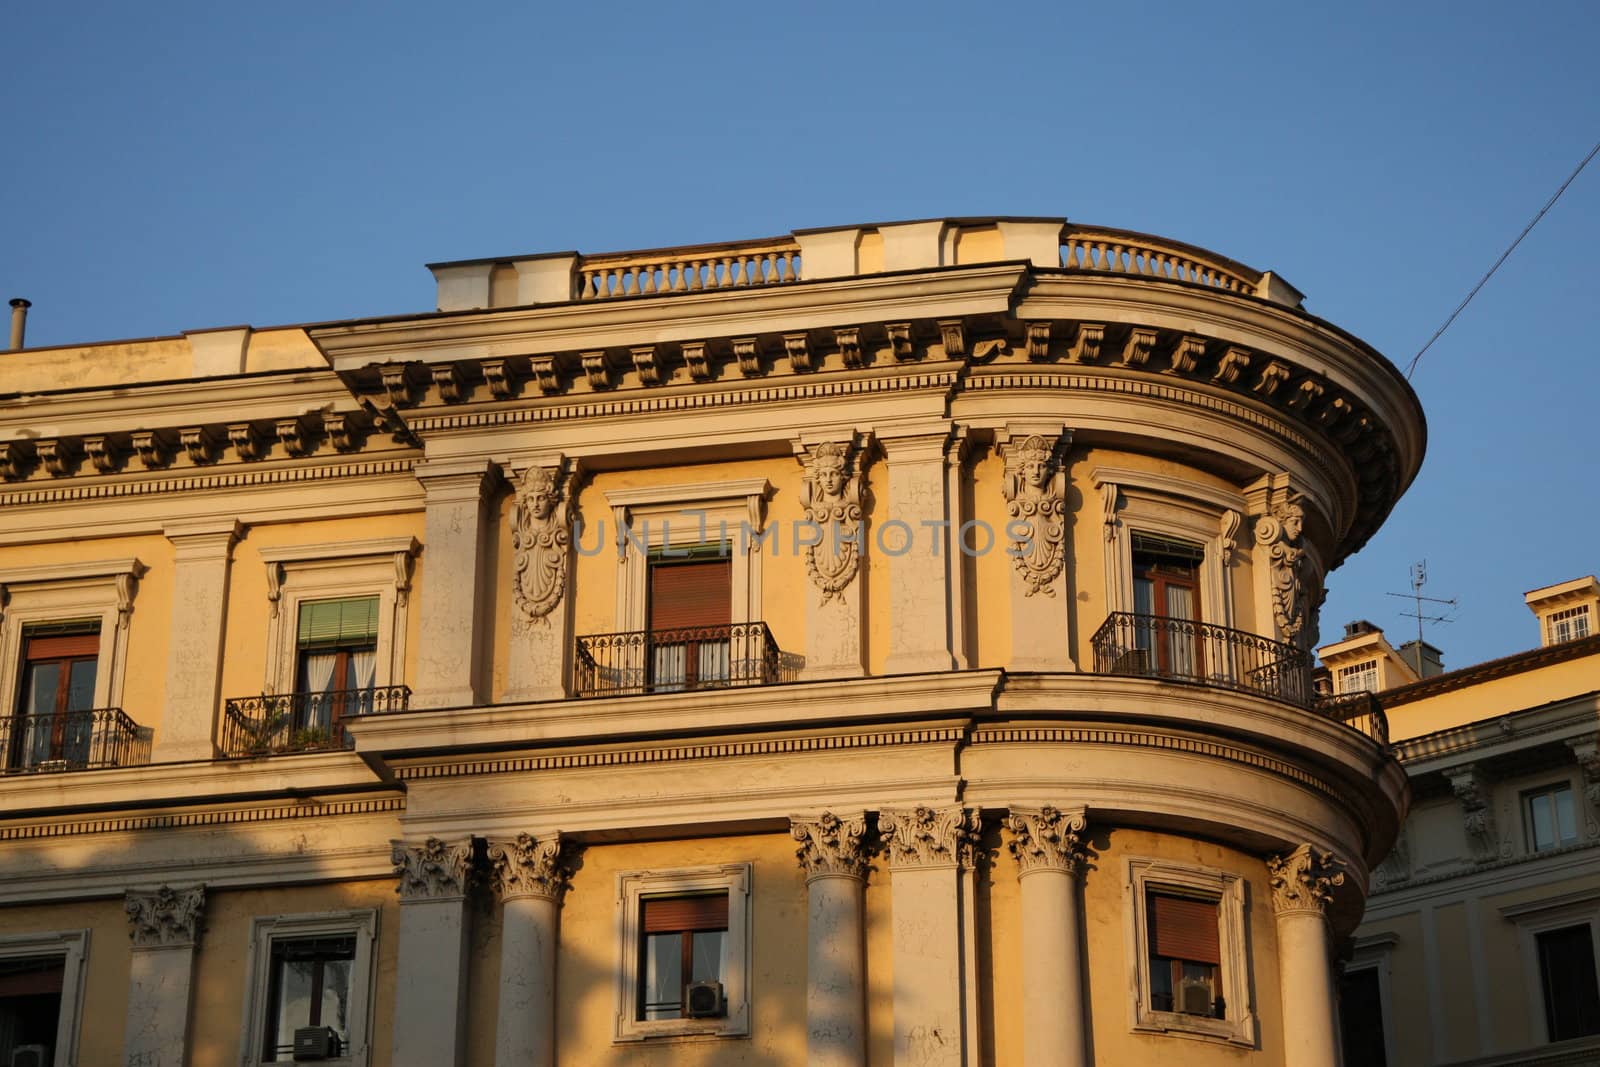 Rome by MihaiDancaescu